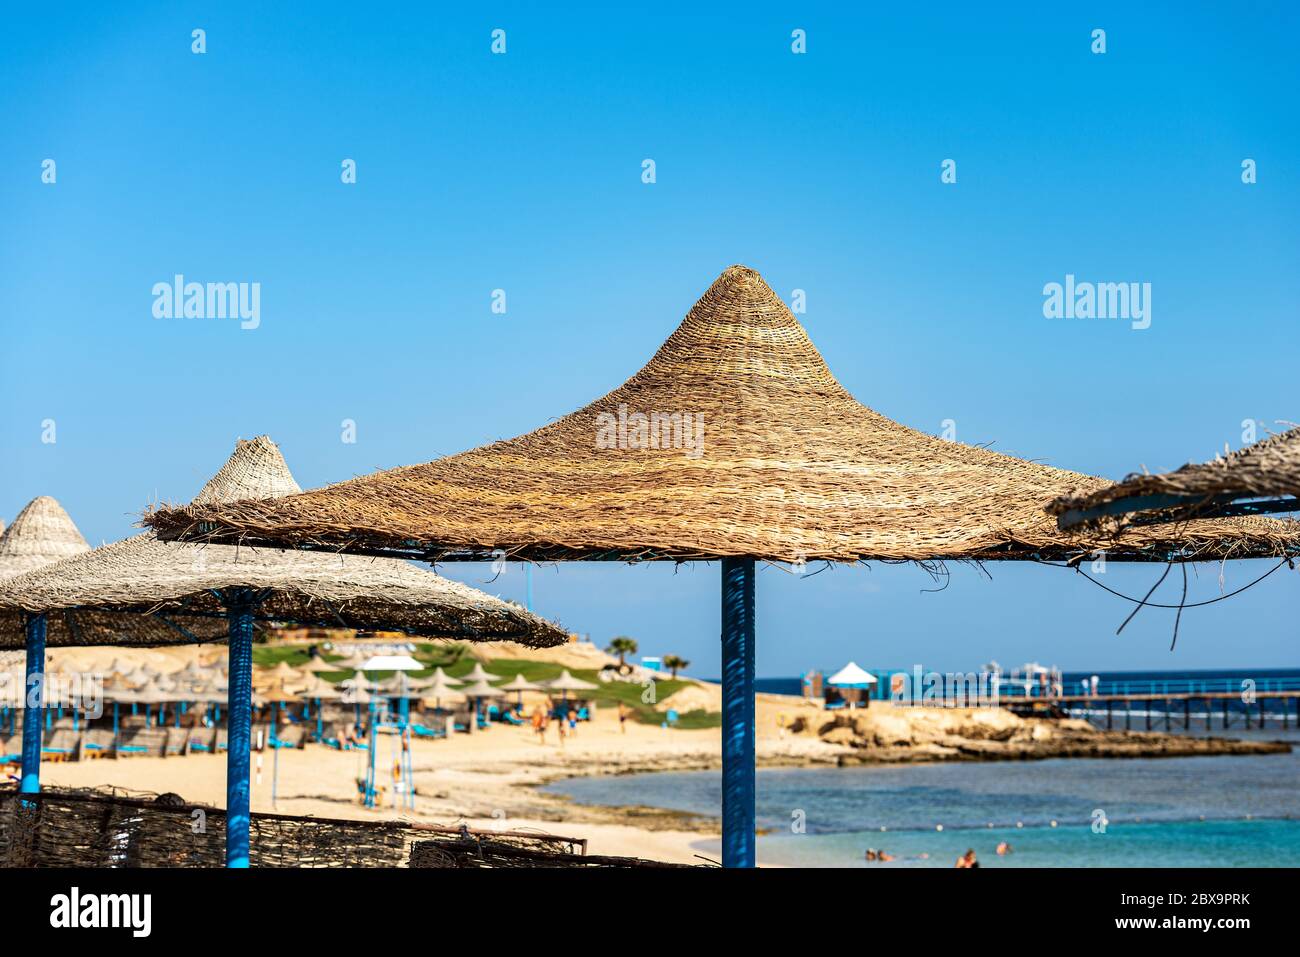 Groupe de parasols en paille sur une plage de la mer Rouge, dans un ciel bleu clair, près de Marsa Alam, Égypte, Afrique. Banque D'Images